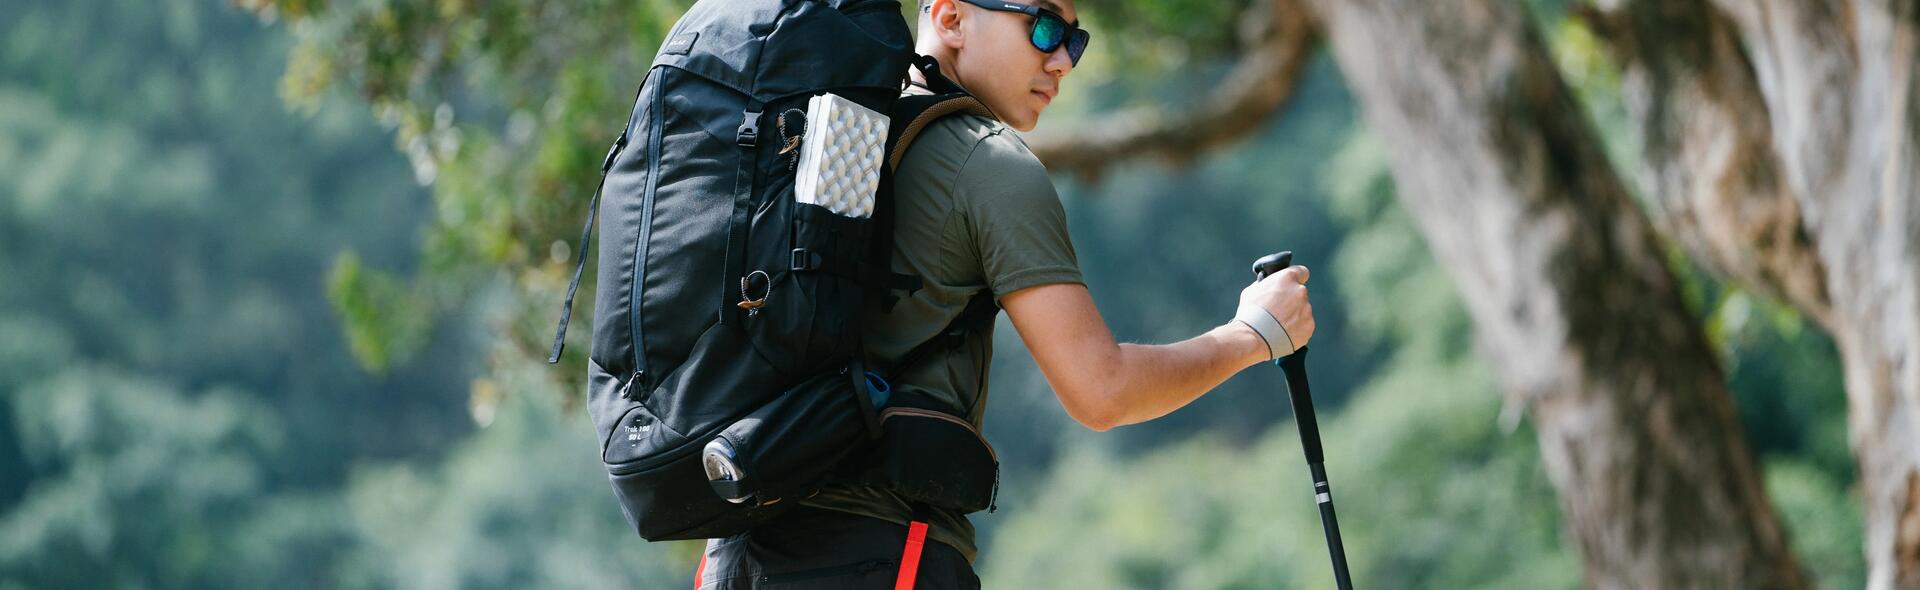 mężczyzna z plecakiem na plecach i kijem trekkingowym w ręce